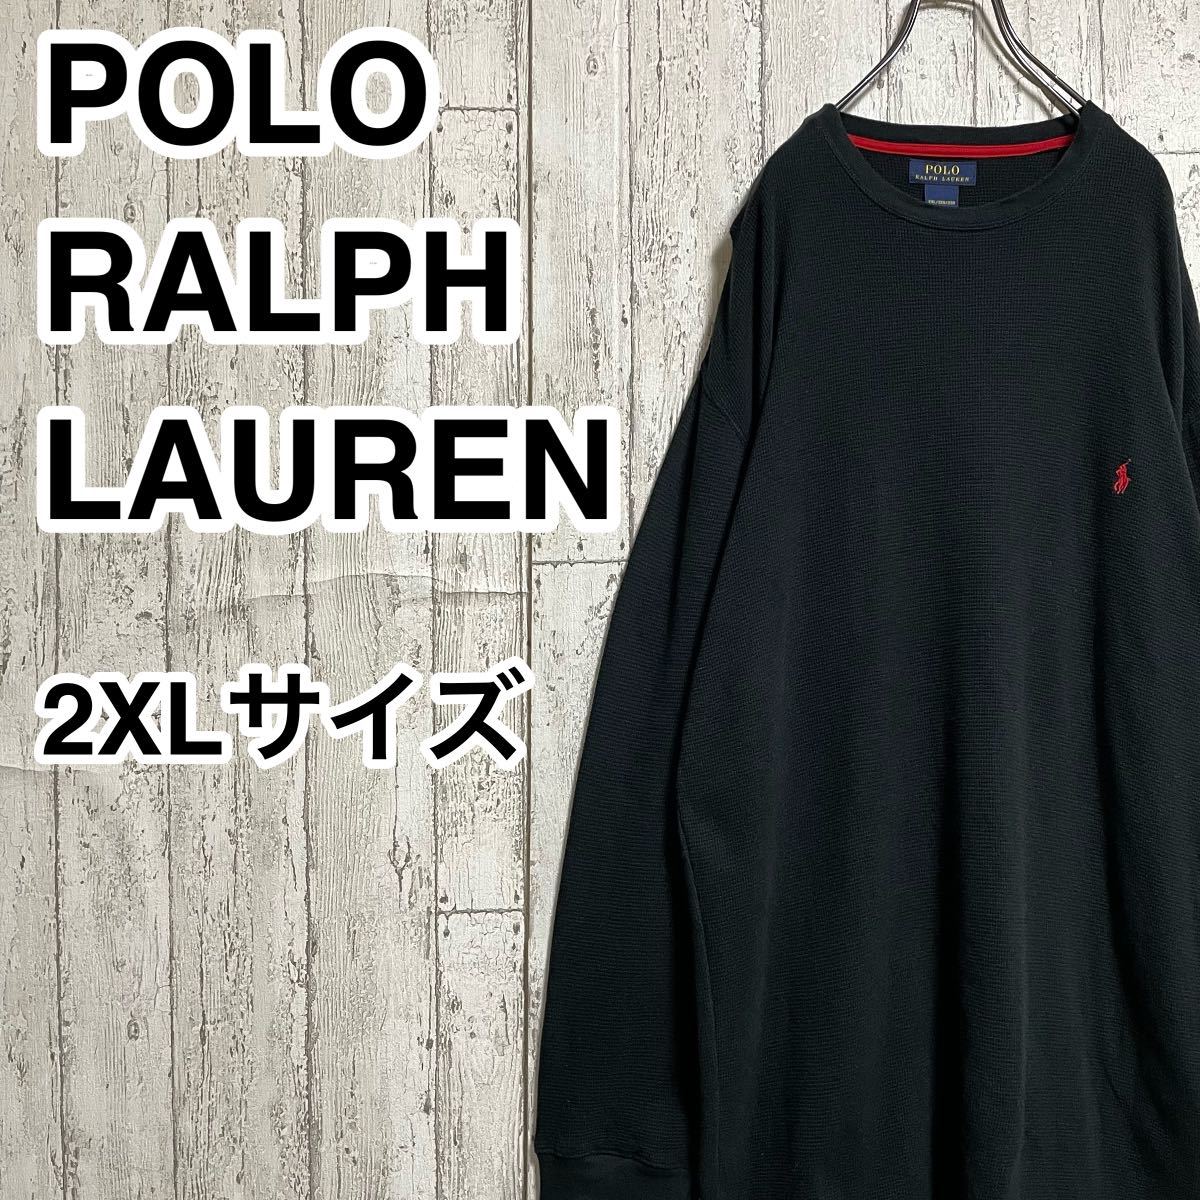 【人気ブランド】ポロラルフローレン POLO RALPH LAUREN 長袖 スリープシャツ ビッグサイズ 2XLサイズ ブラック レッドポニー 22-28